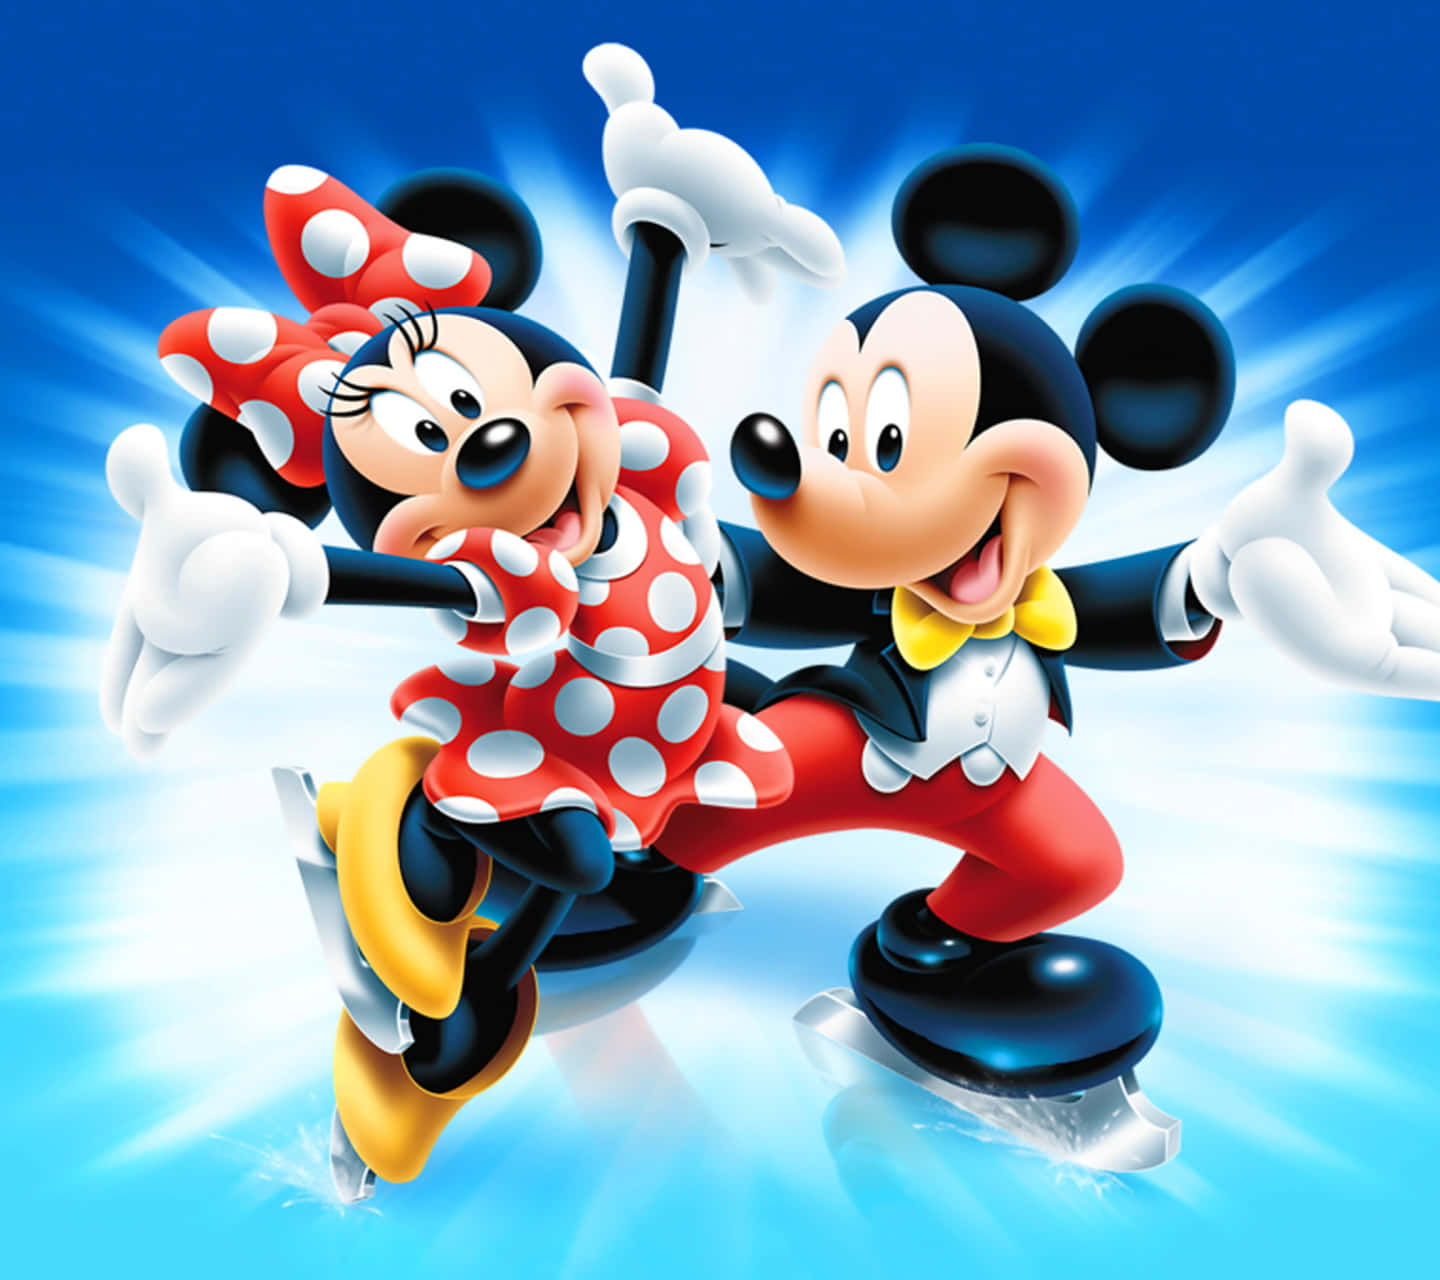 Willkommensie Das Neue Jahr Mit Mickey Mouse. Wallpaper